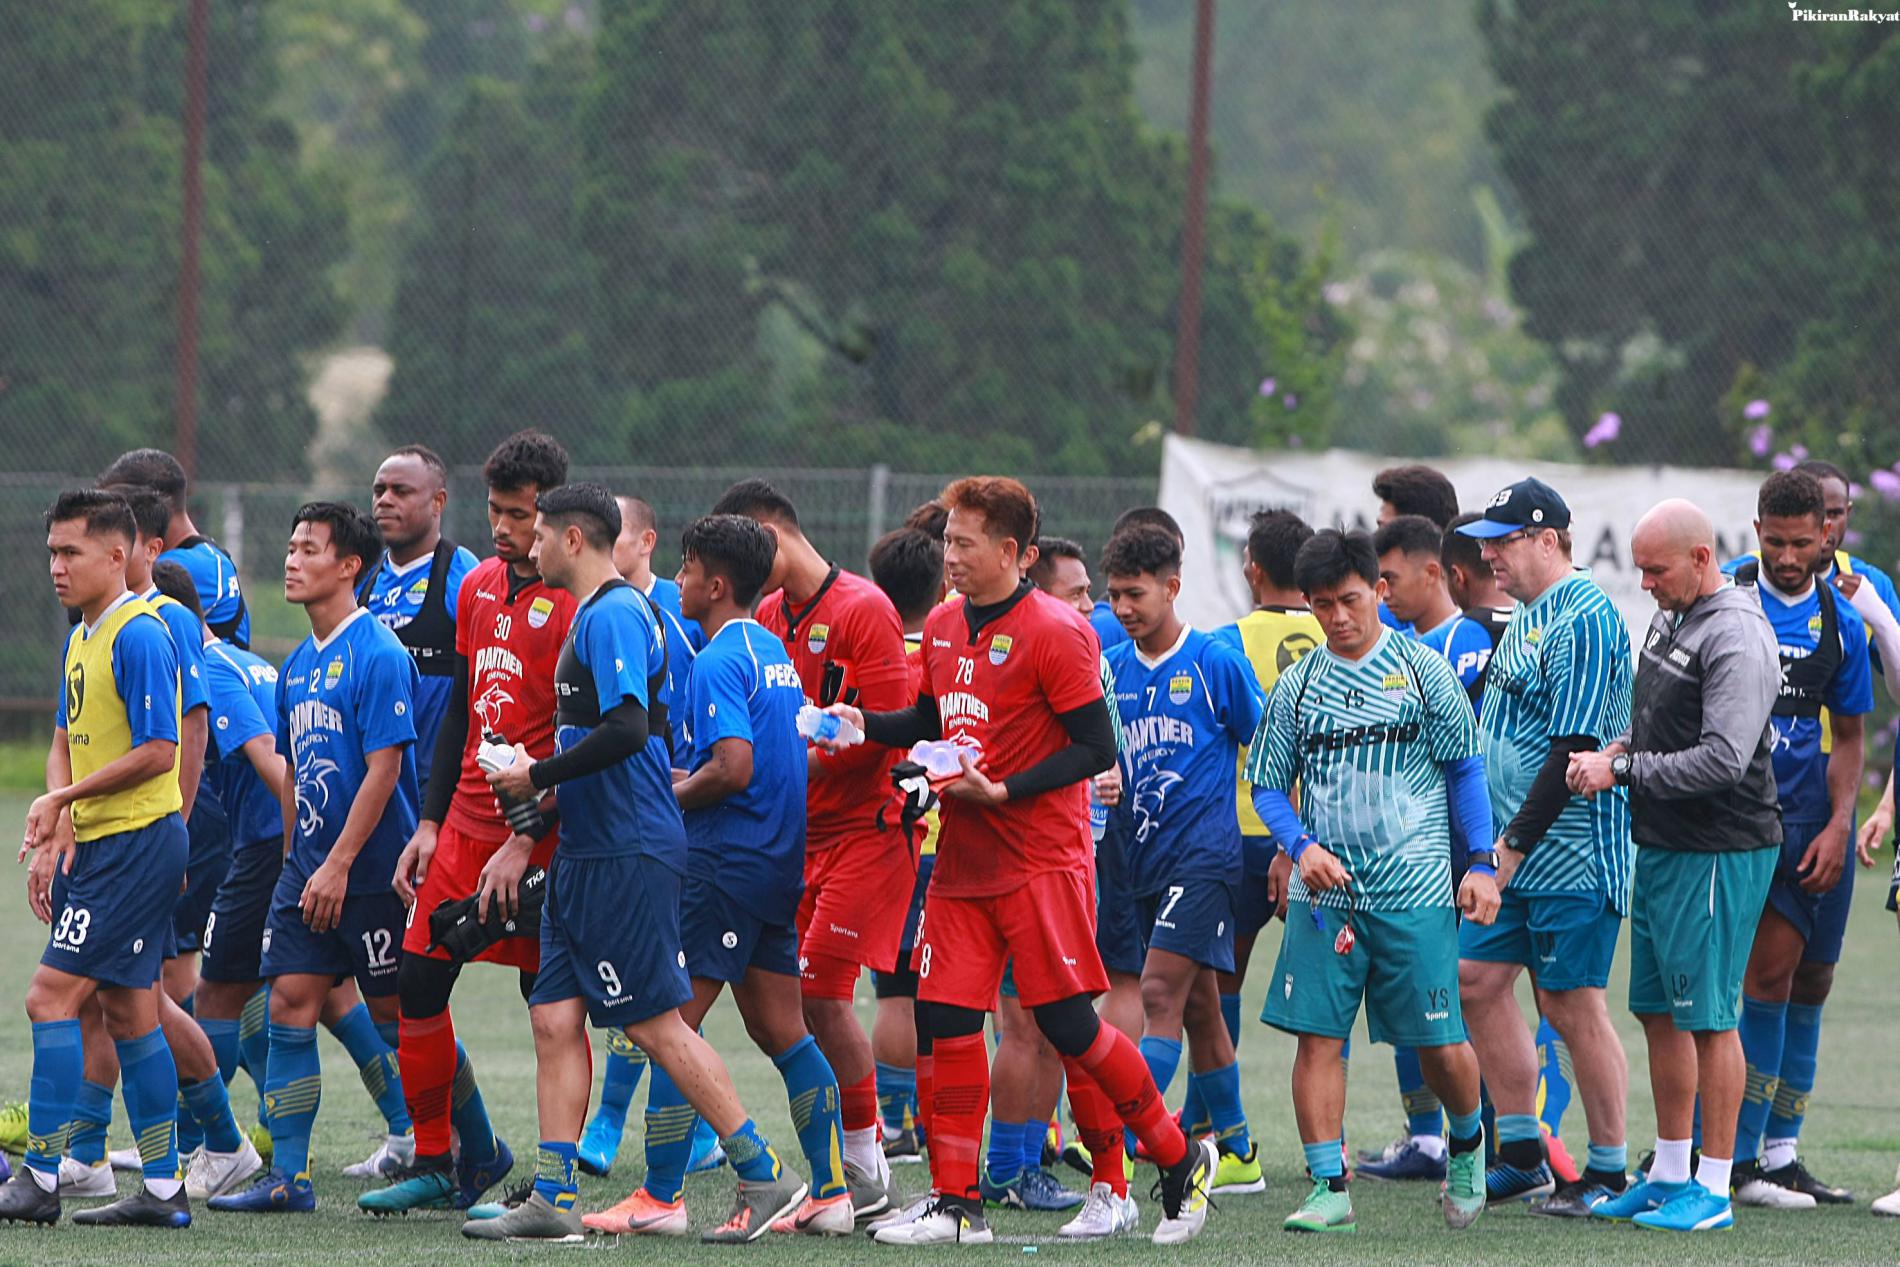 Pemain Muda Persib Bandung Mario Jardel Perpanjang Kontrak Hingga 2021